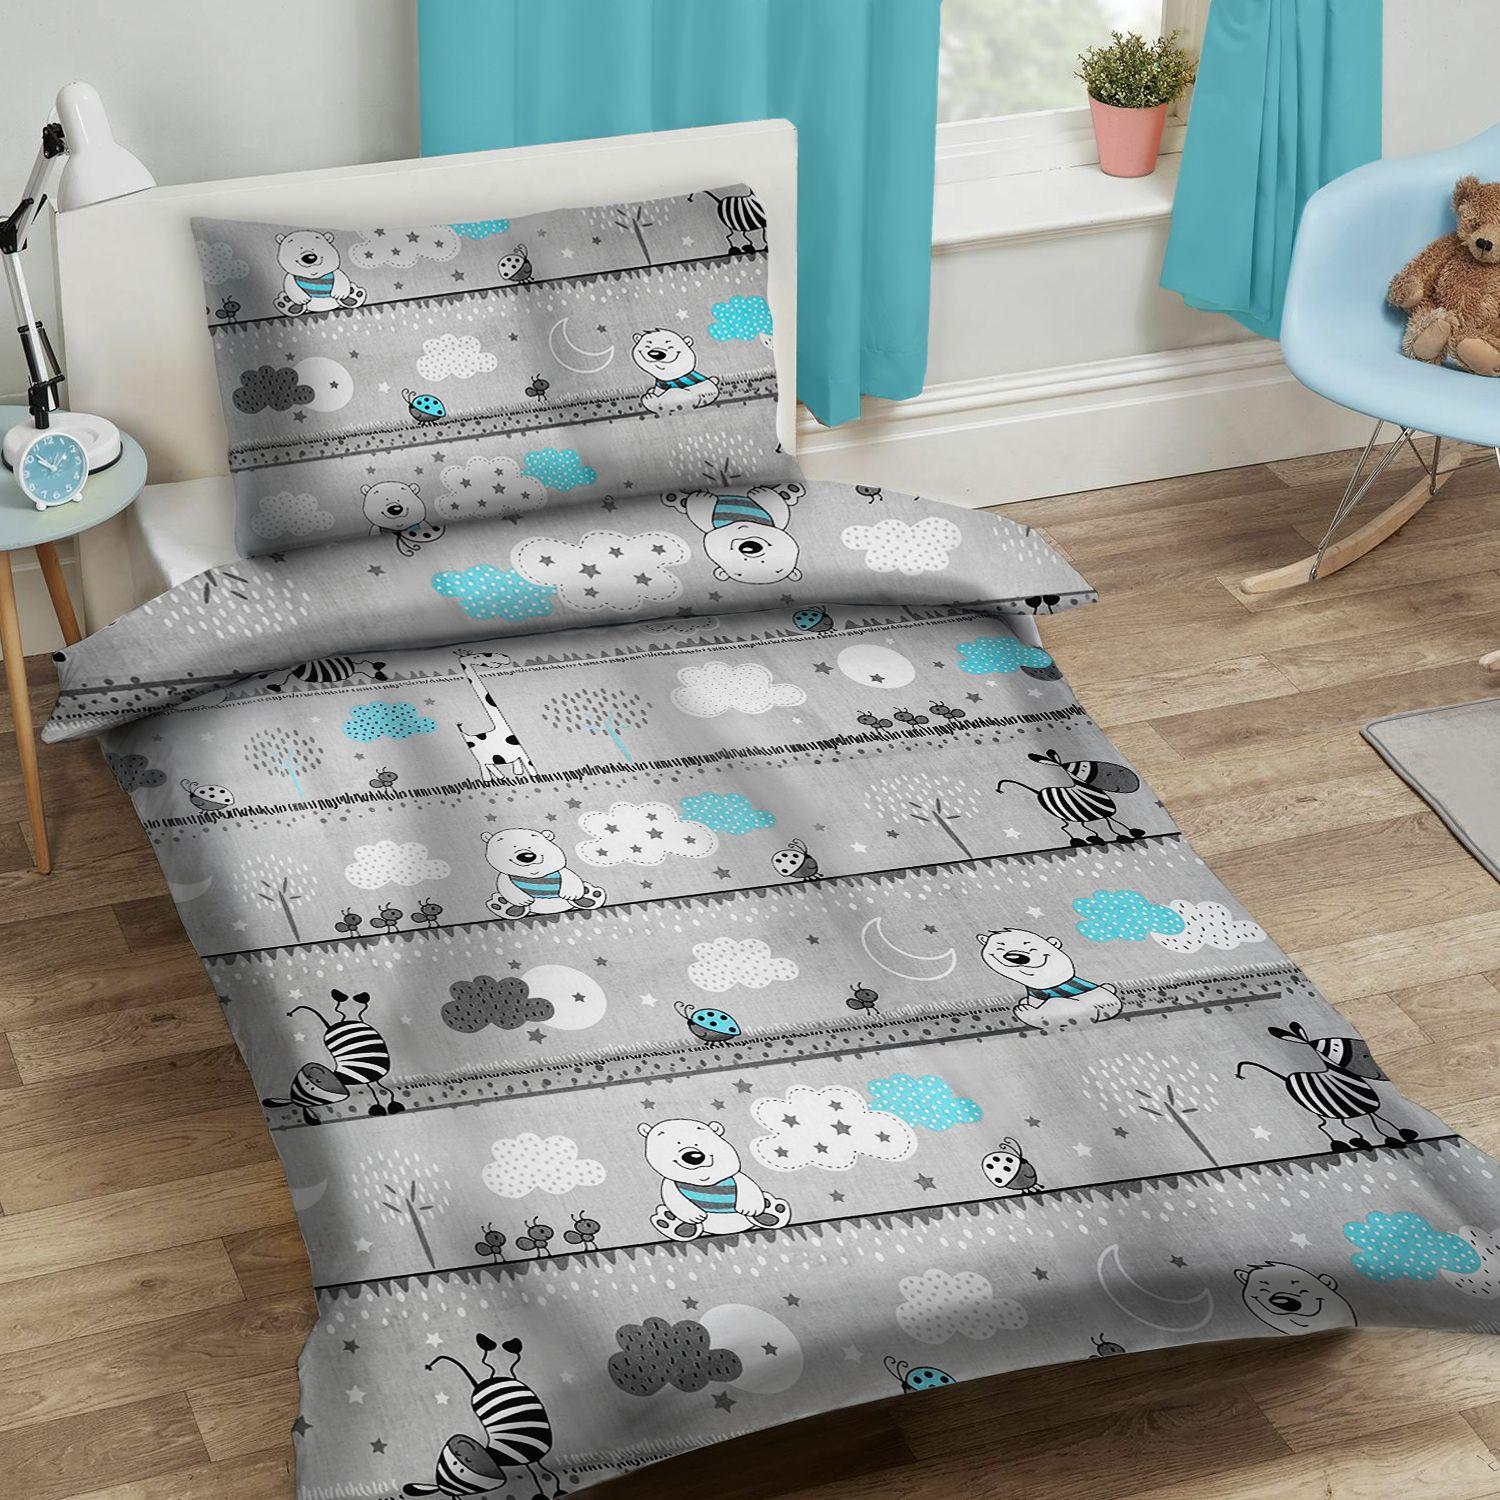 Set of children's bedding 90x120cm - grey animals